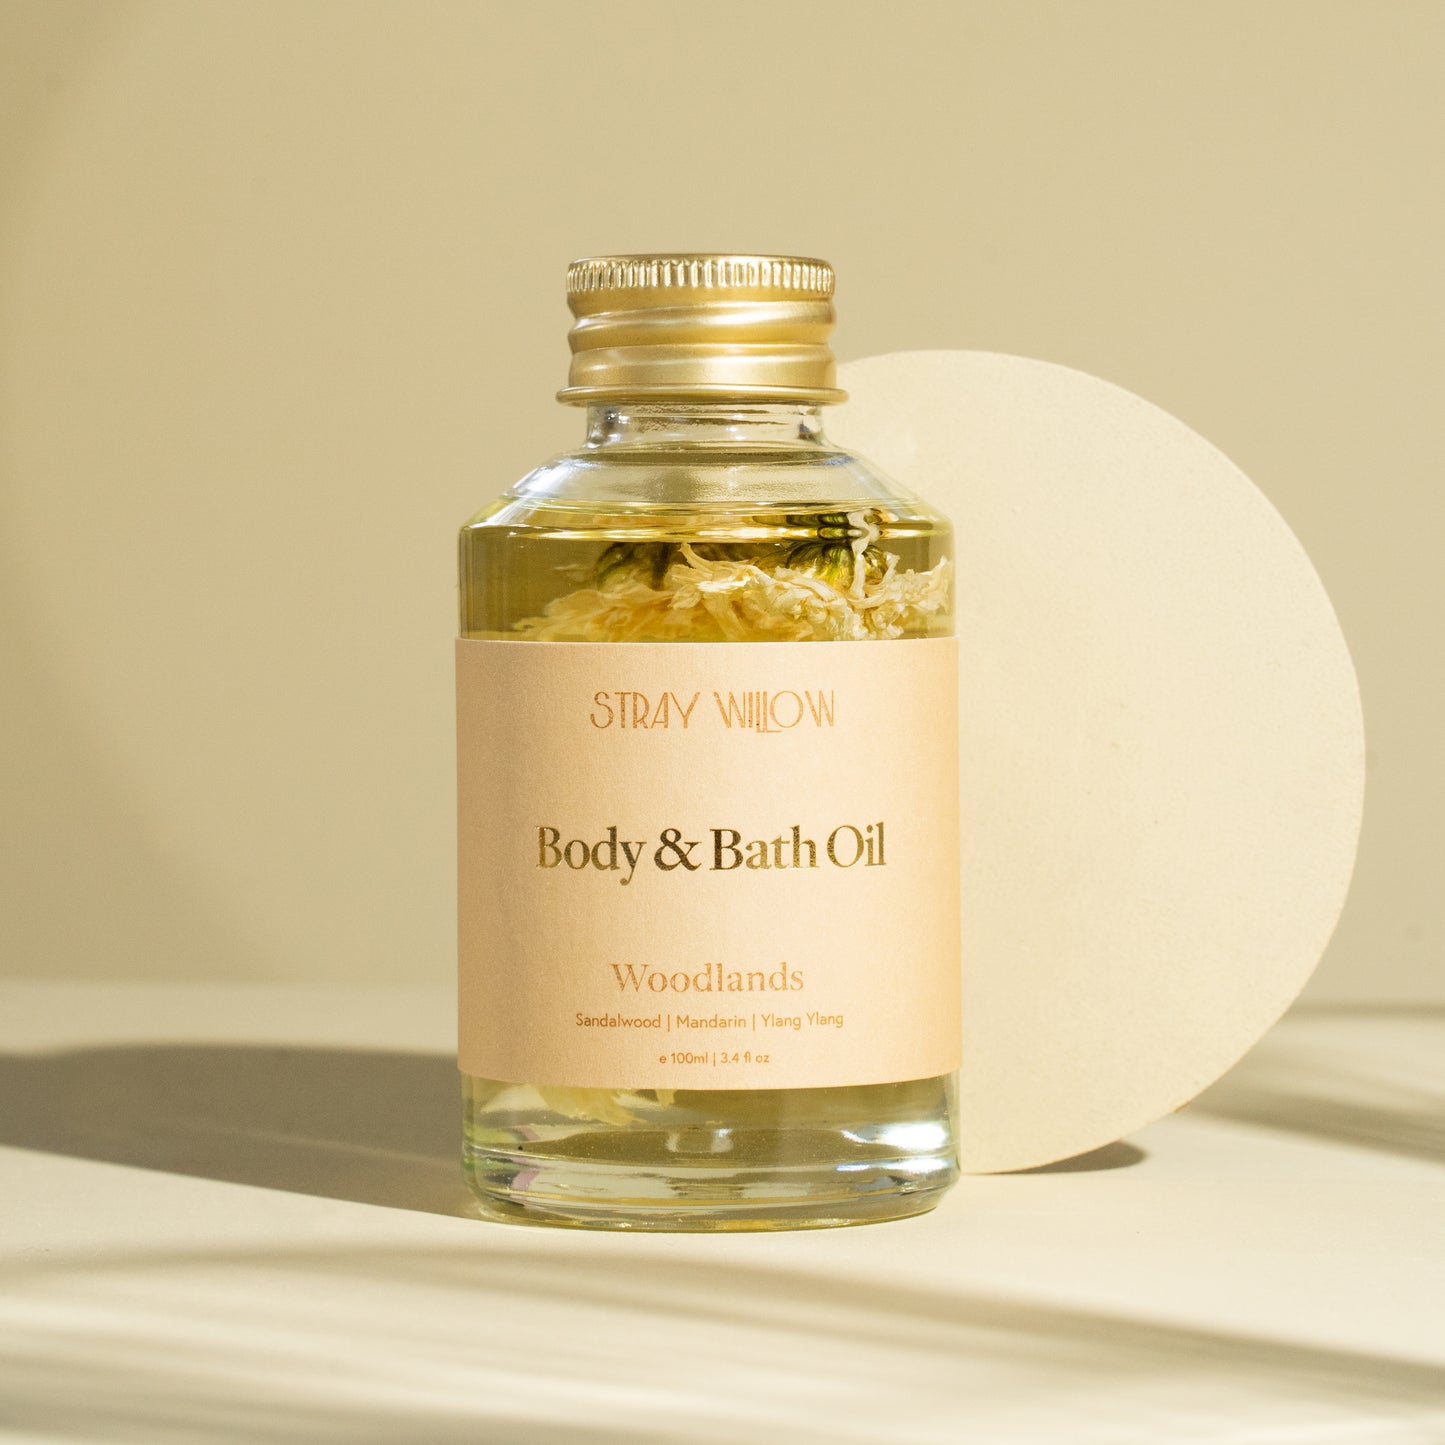 Body & Bath Oil